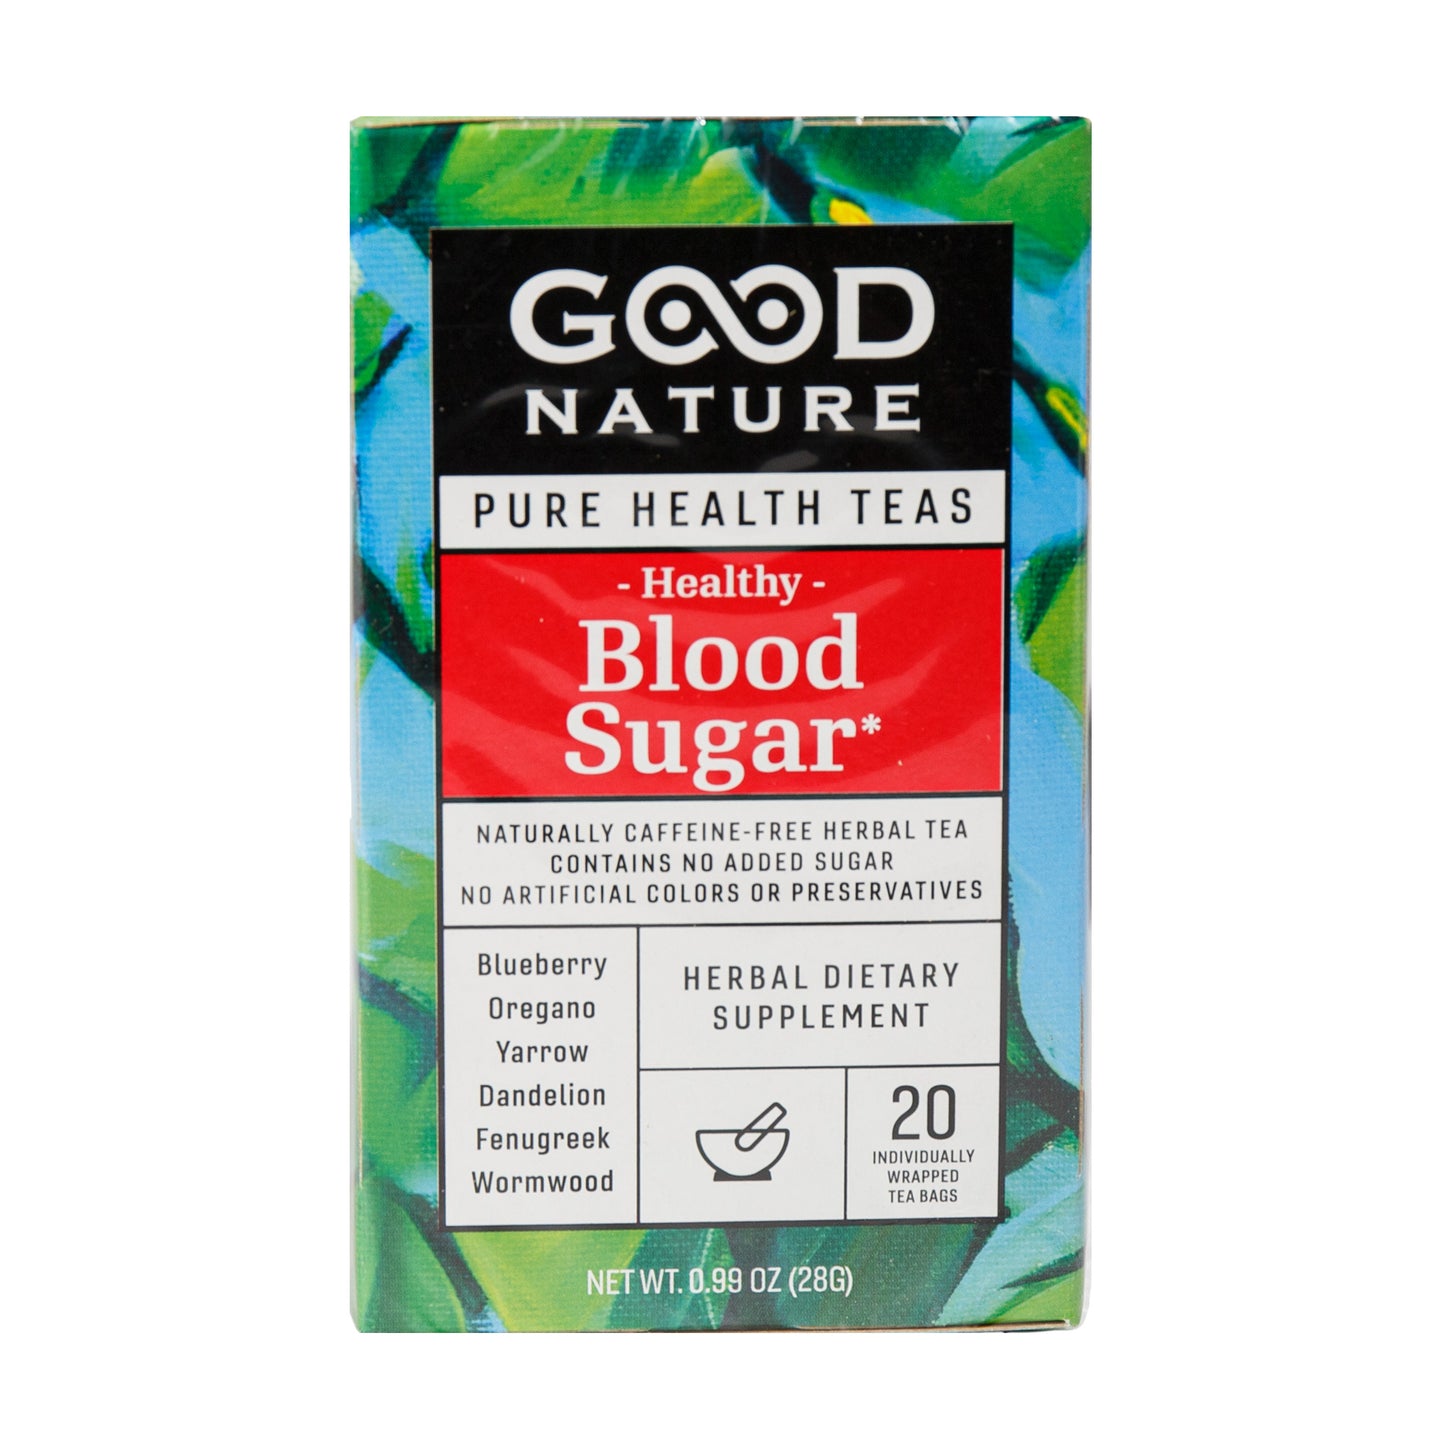 Primary image of healthy blood sugar tea